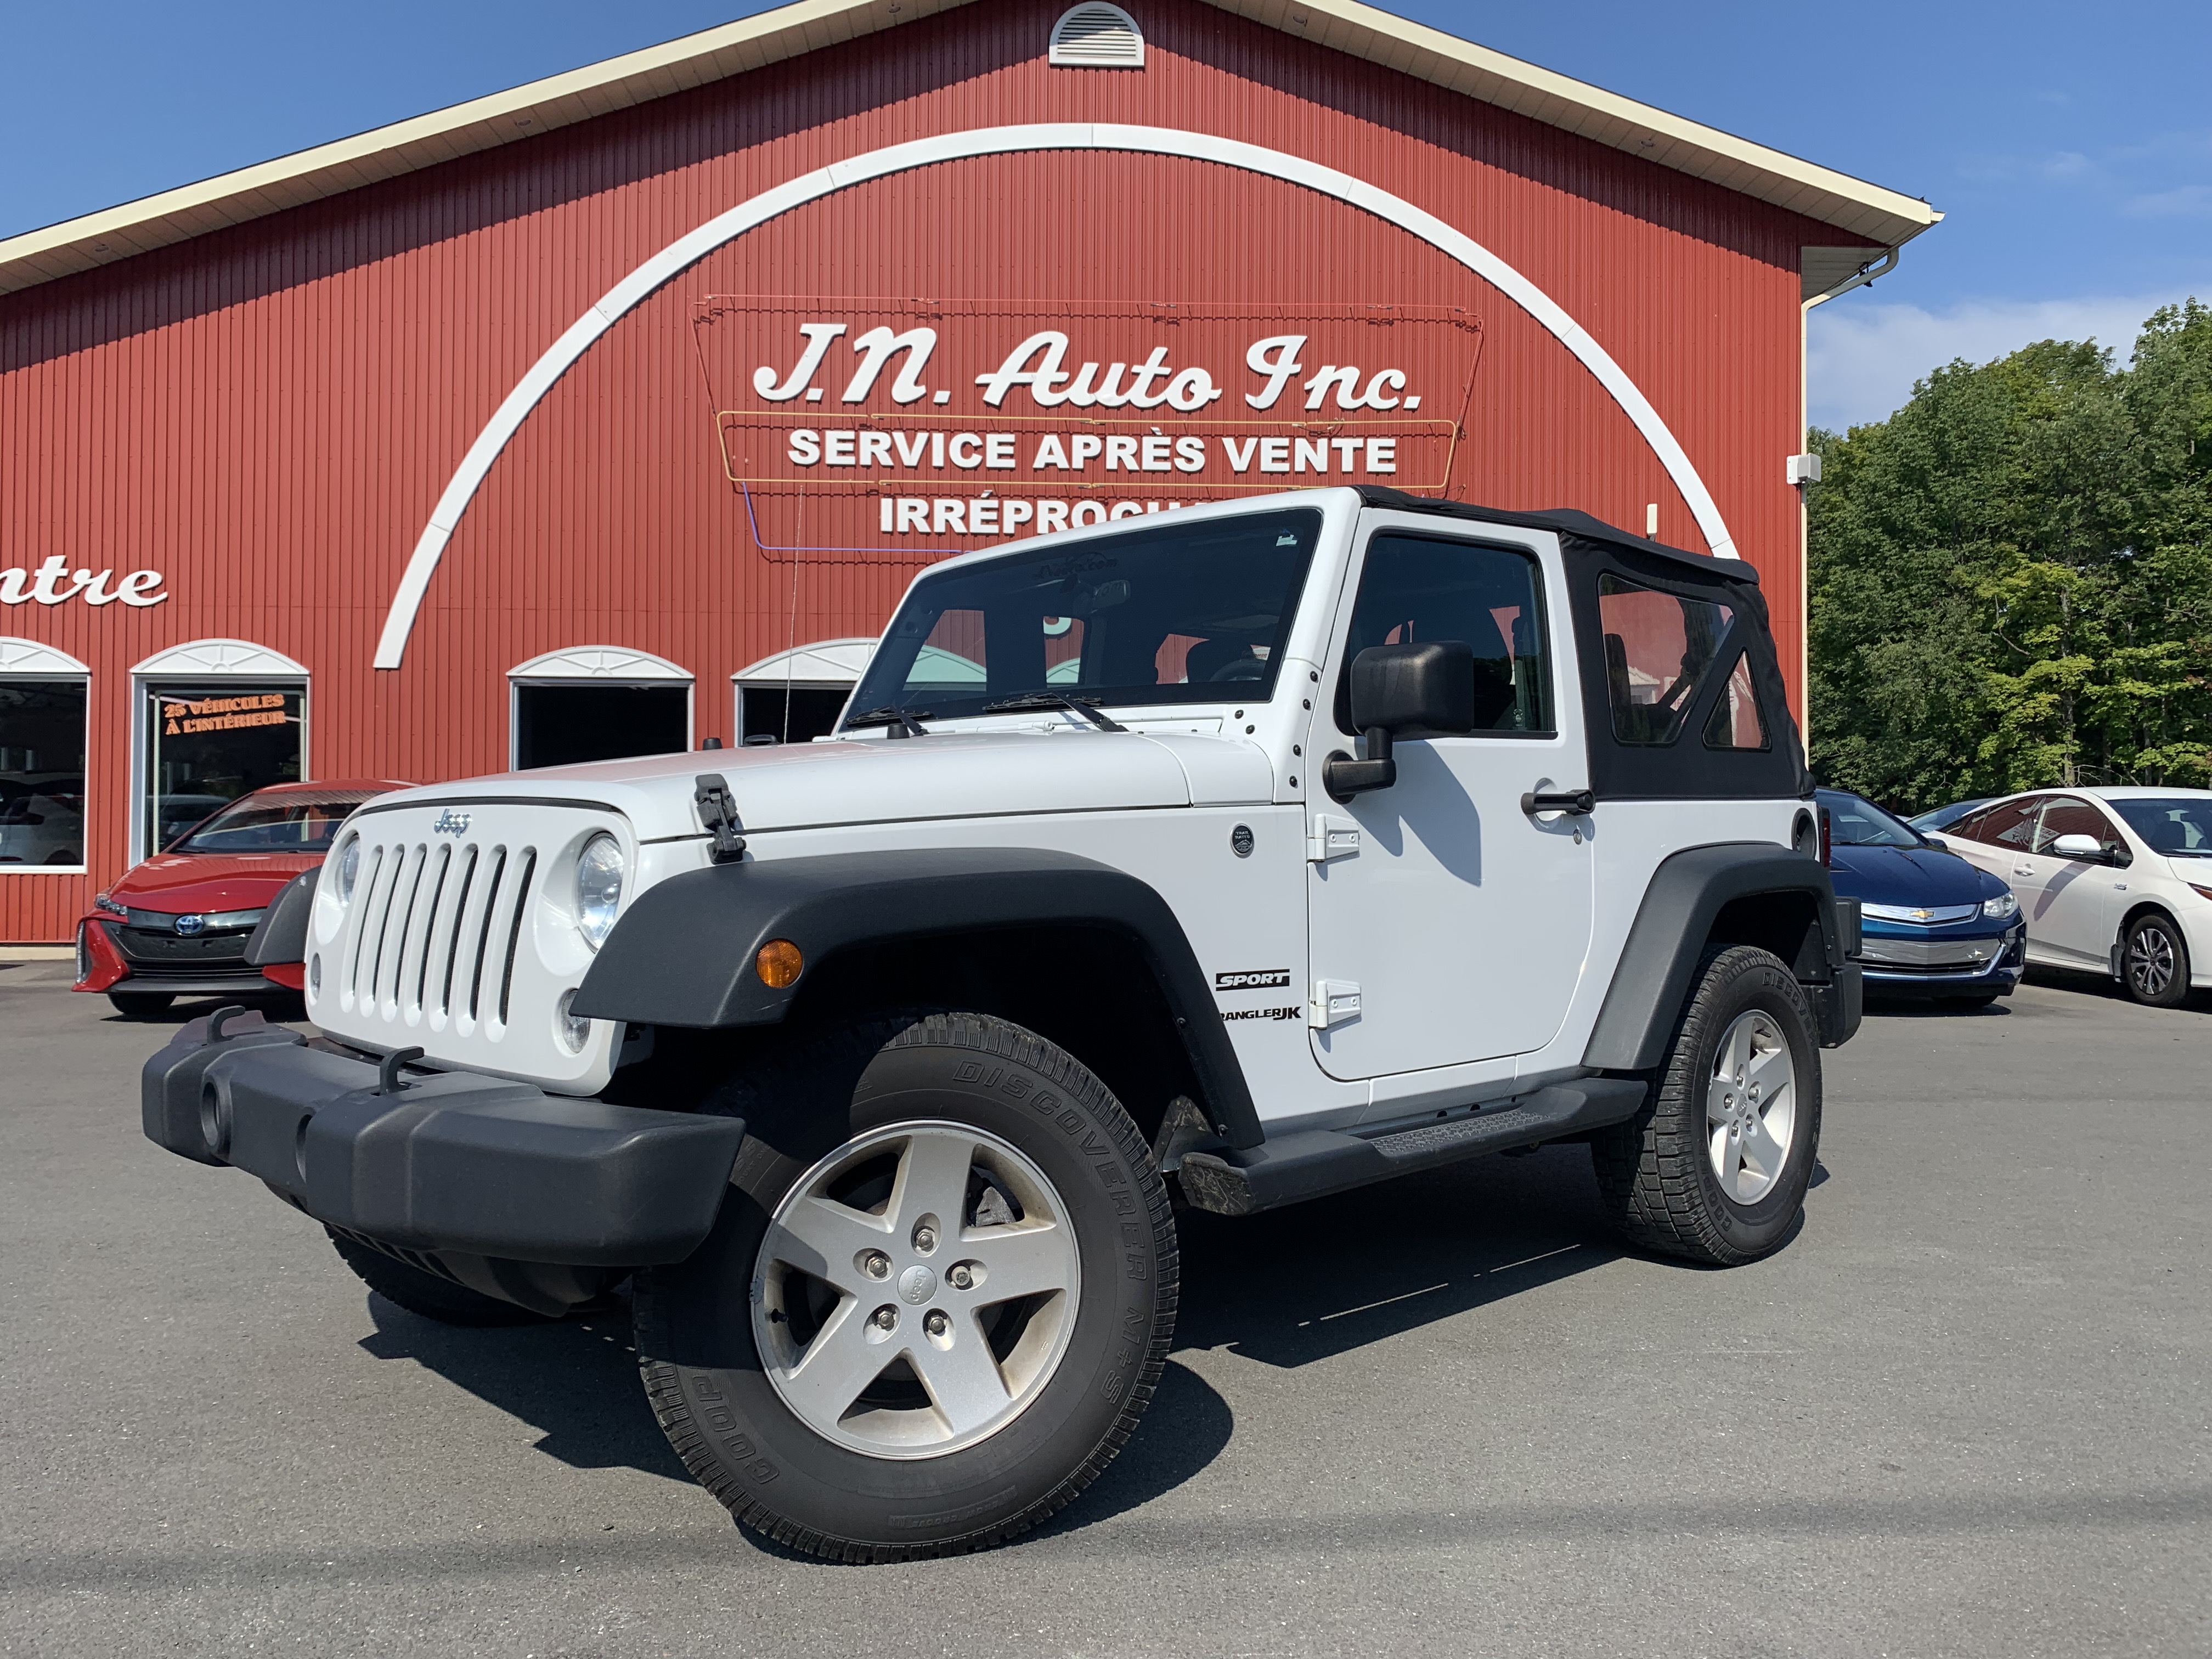 Véhicule Jeep Wrangler 2018 à vendre près de Sherbrooke, JN Auto